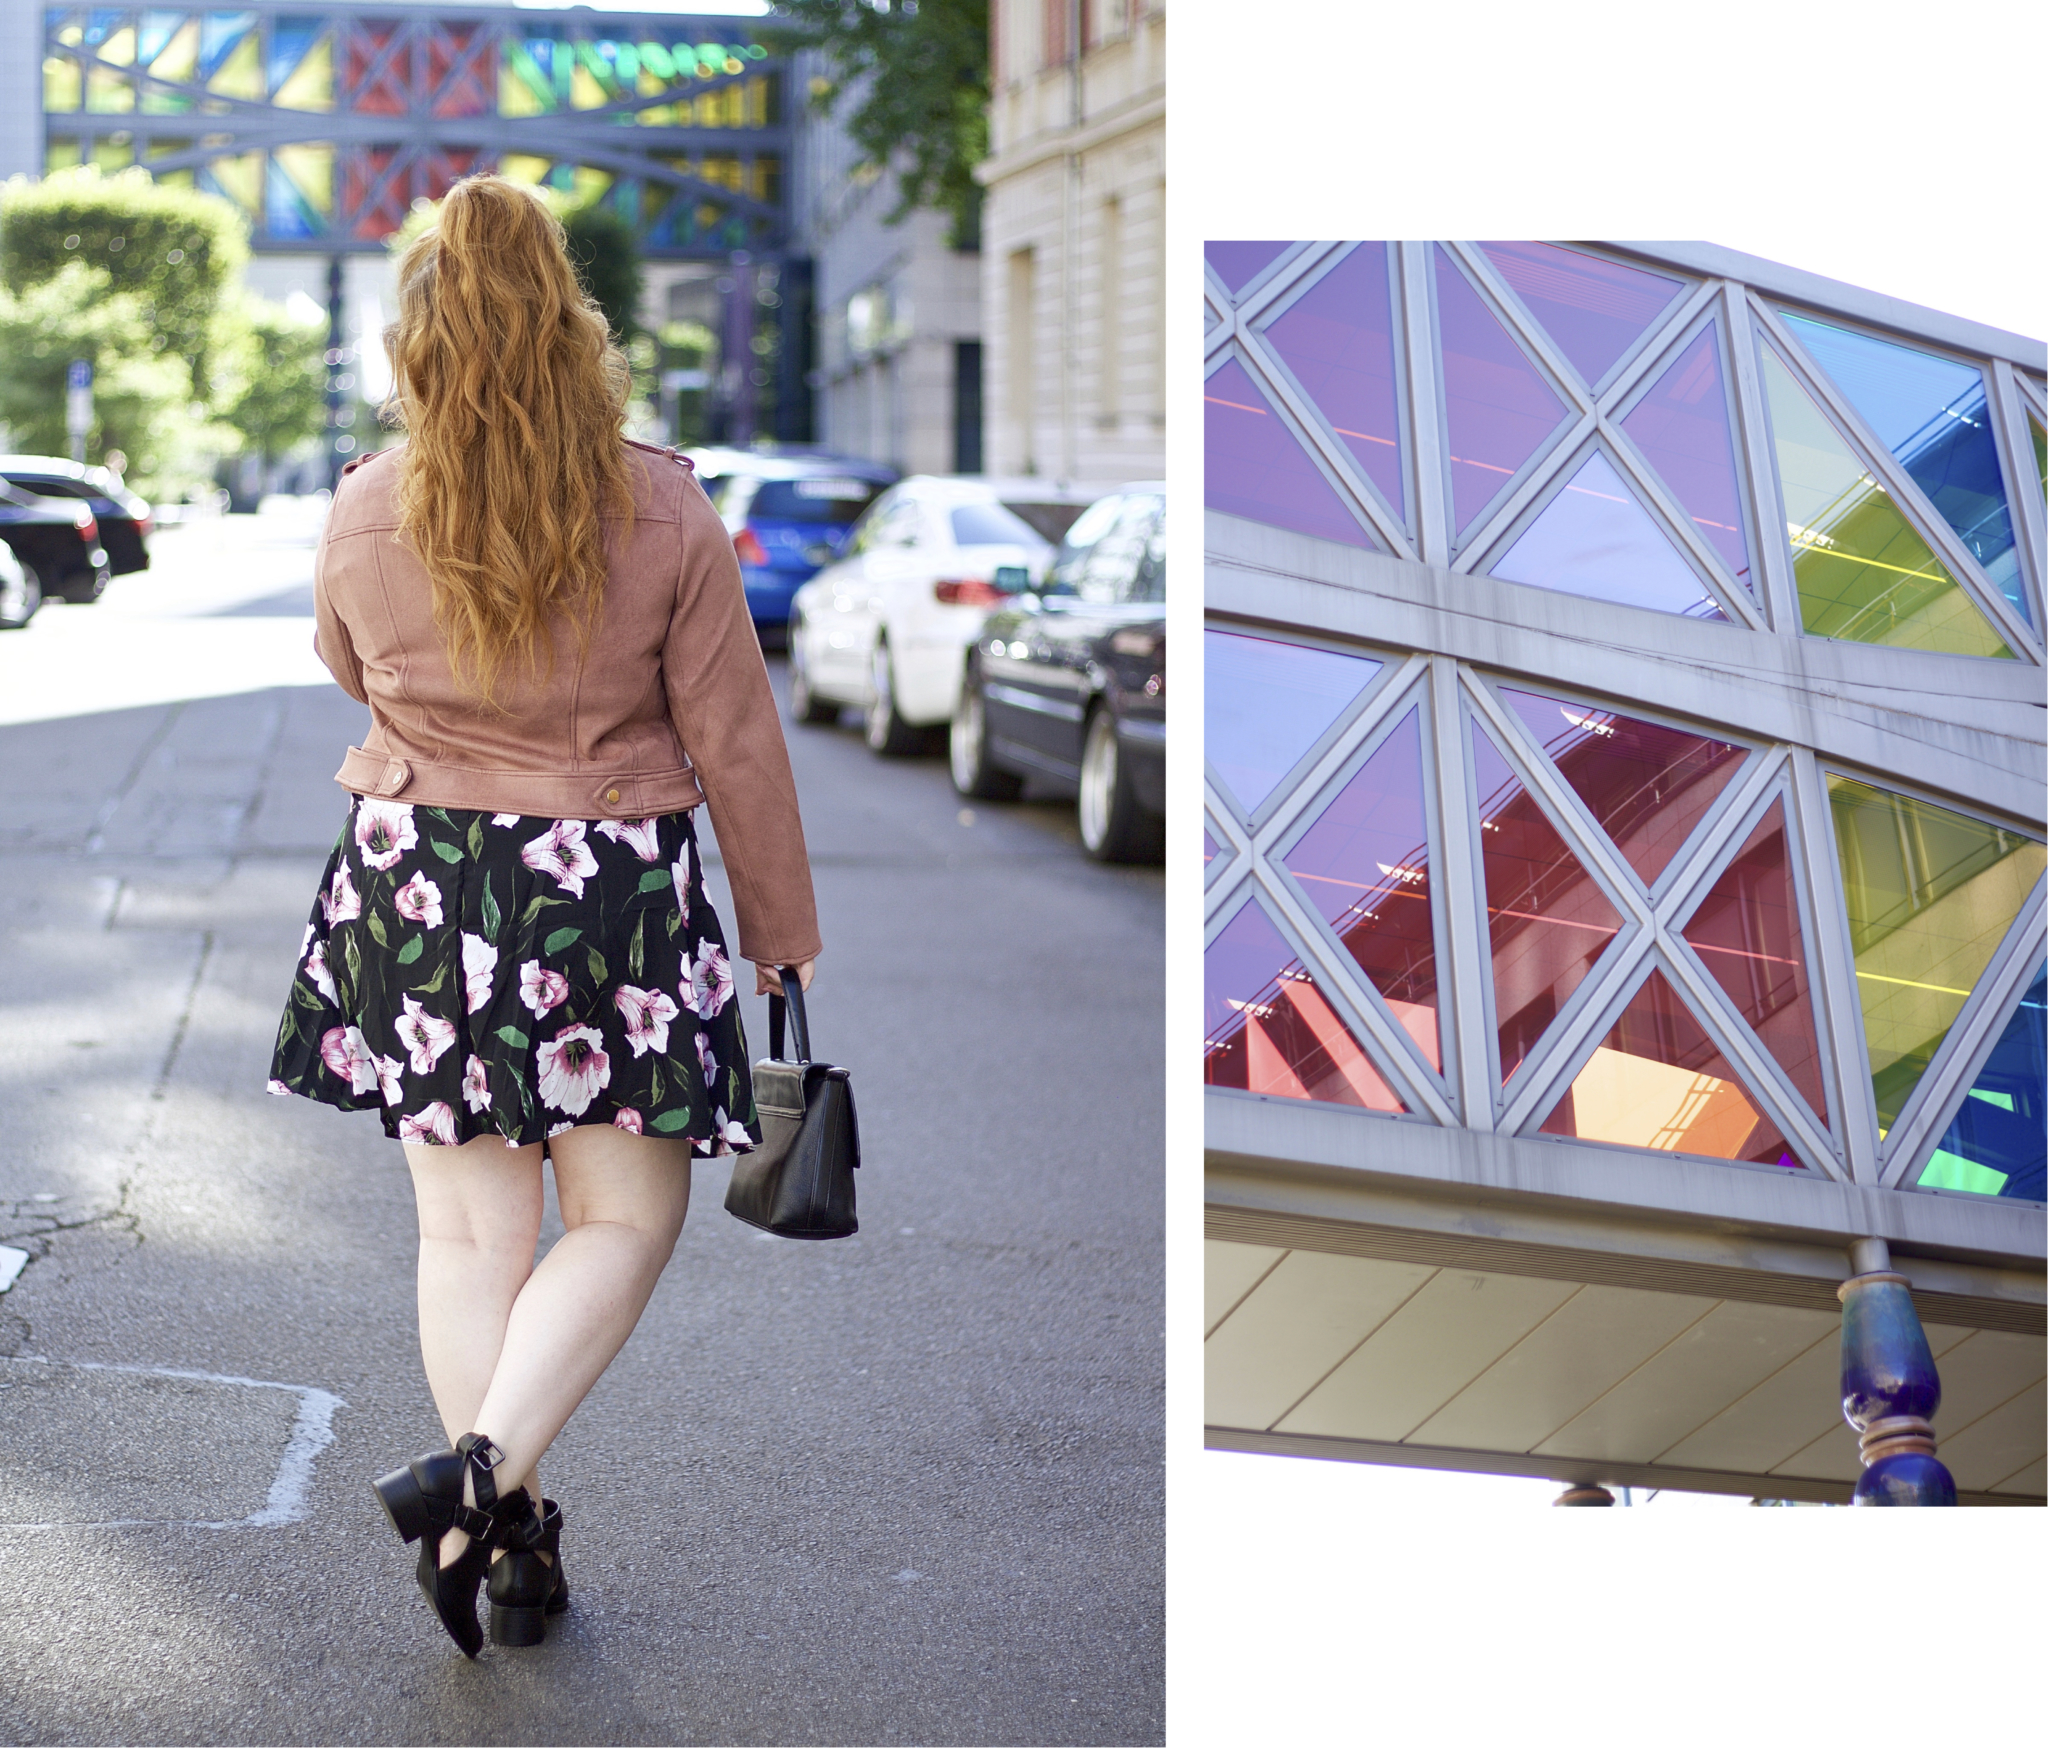  Fashion Blogger Outfit Inspiration: Wickelkleid von Asos trifft auf rosa Biberjacke von River Island - Look von hinten